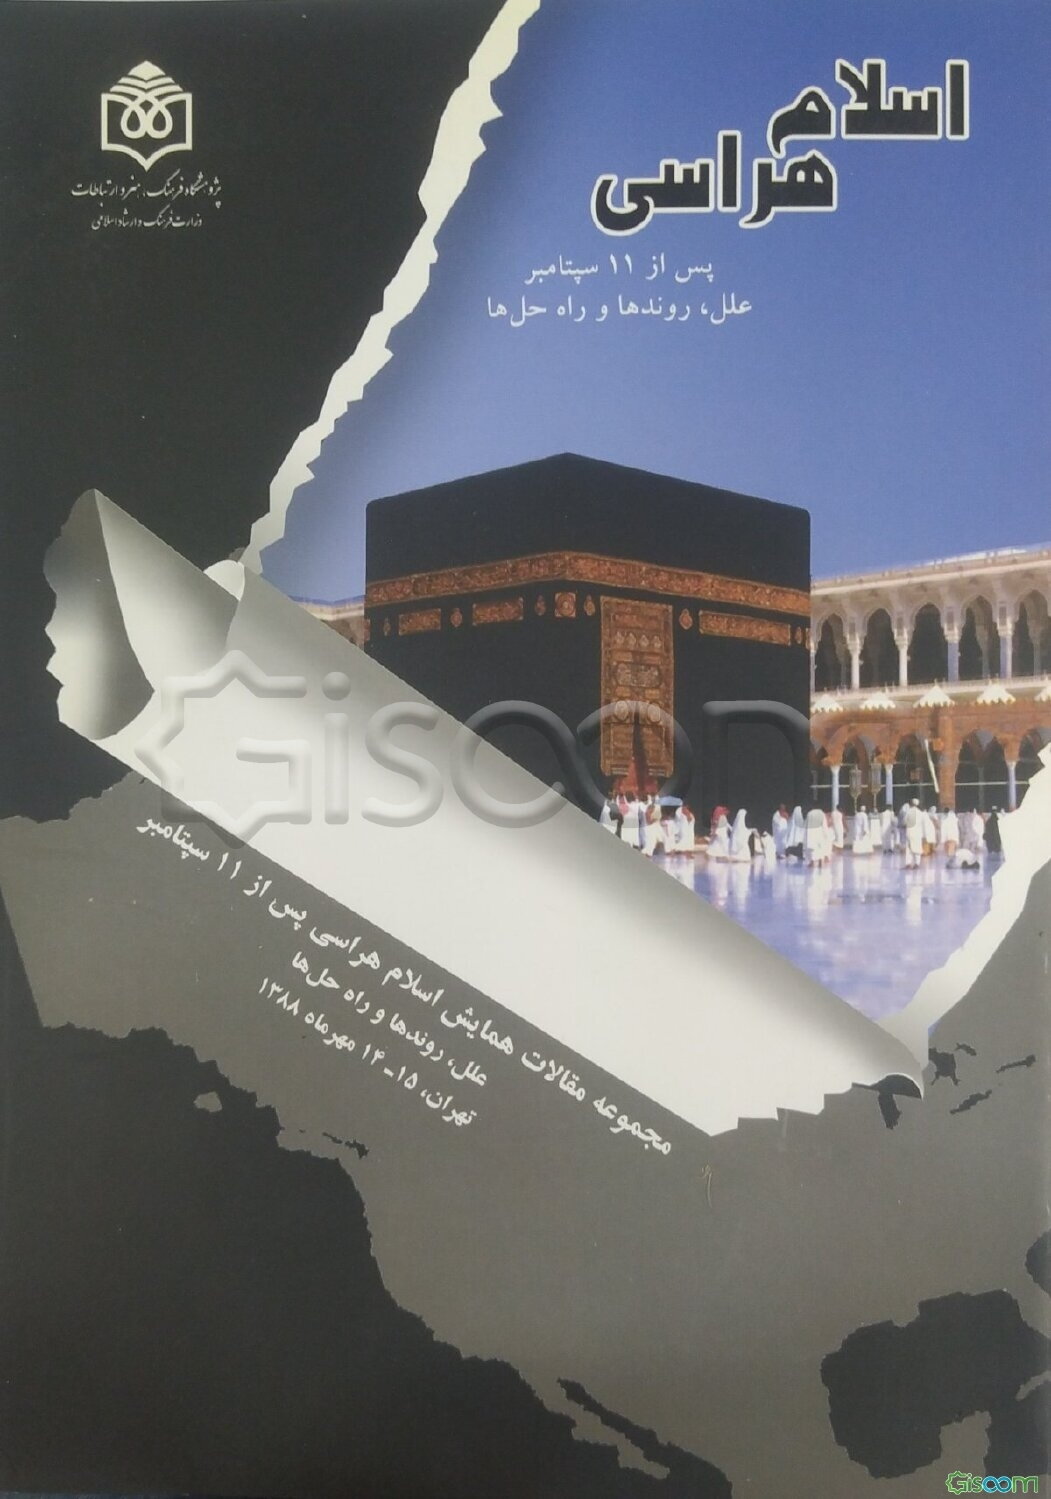 مجموعه مقالات همایش اسلام‌هراسی پس از 11 سپتامبر: علل، روندها و راه حل‌ها (ایران، تهران، 14 و 15 مهرماه 1388)